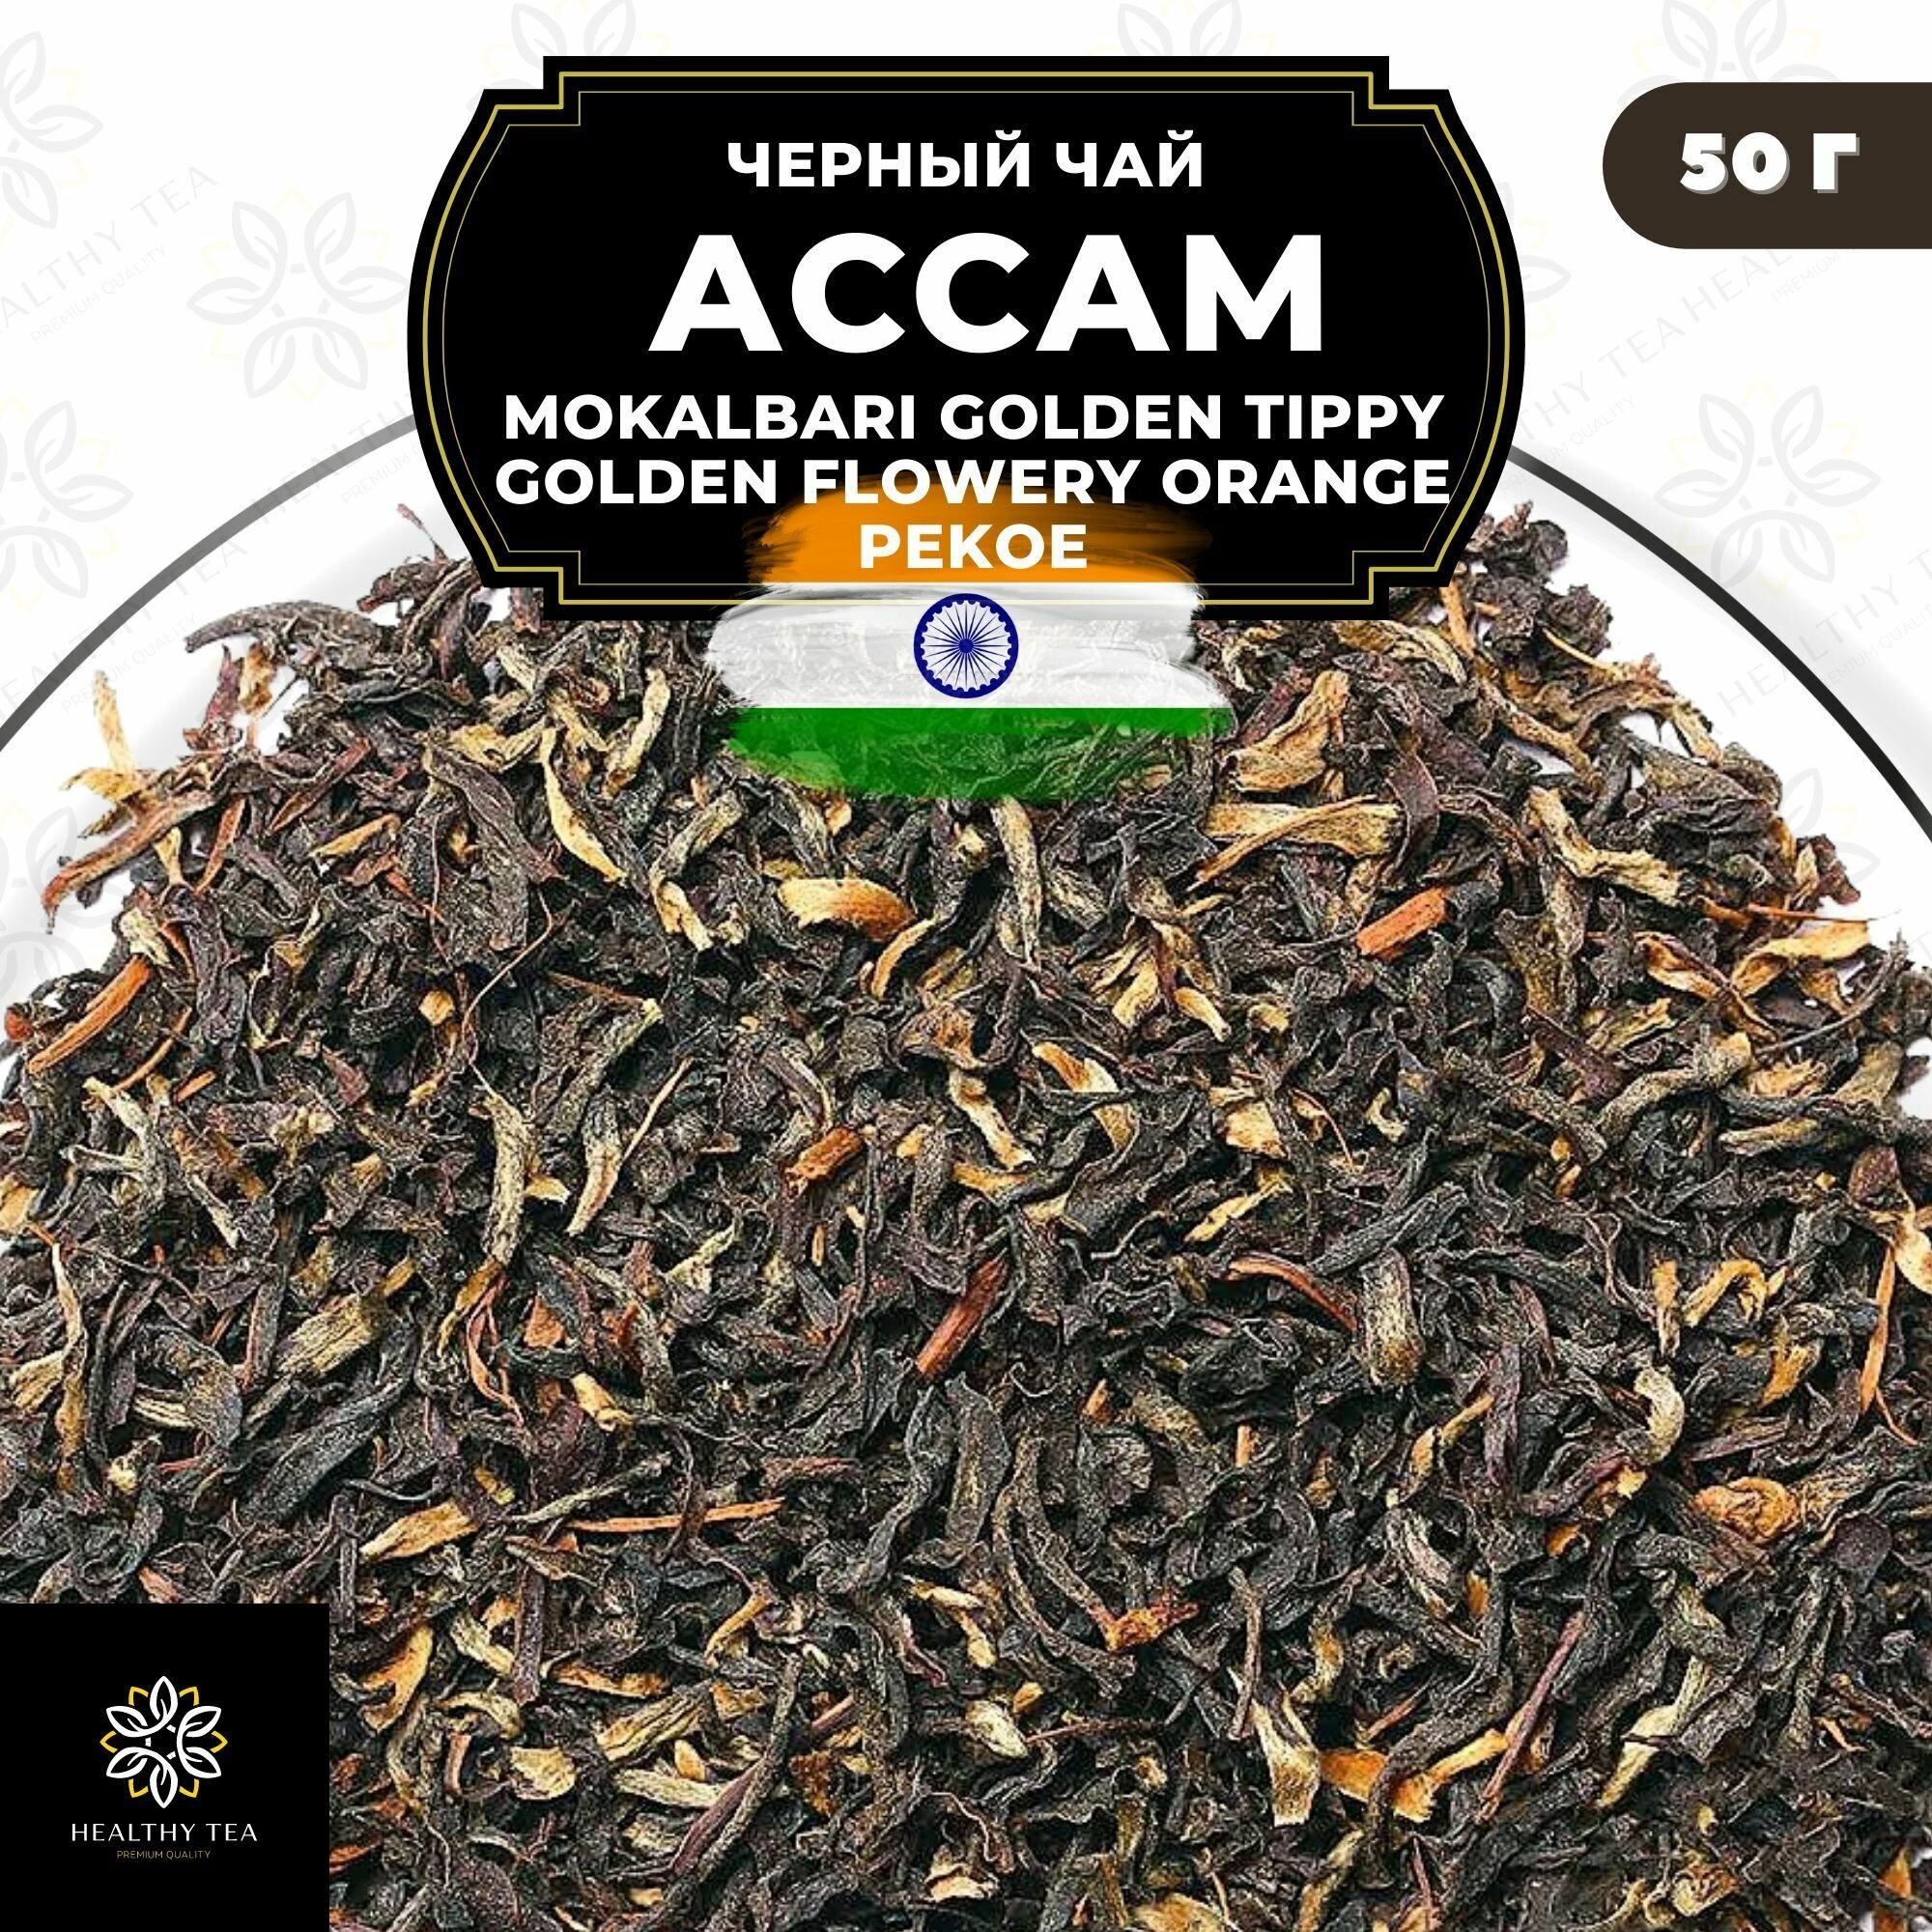 Индийский Черный чай Ассам Mokalbari Golden Tippy Flowery Orange Pekoe (GTGFOP) Полезный чай / HEALTHY TEA, 50 гр